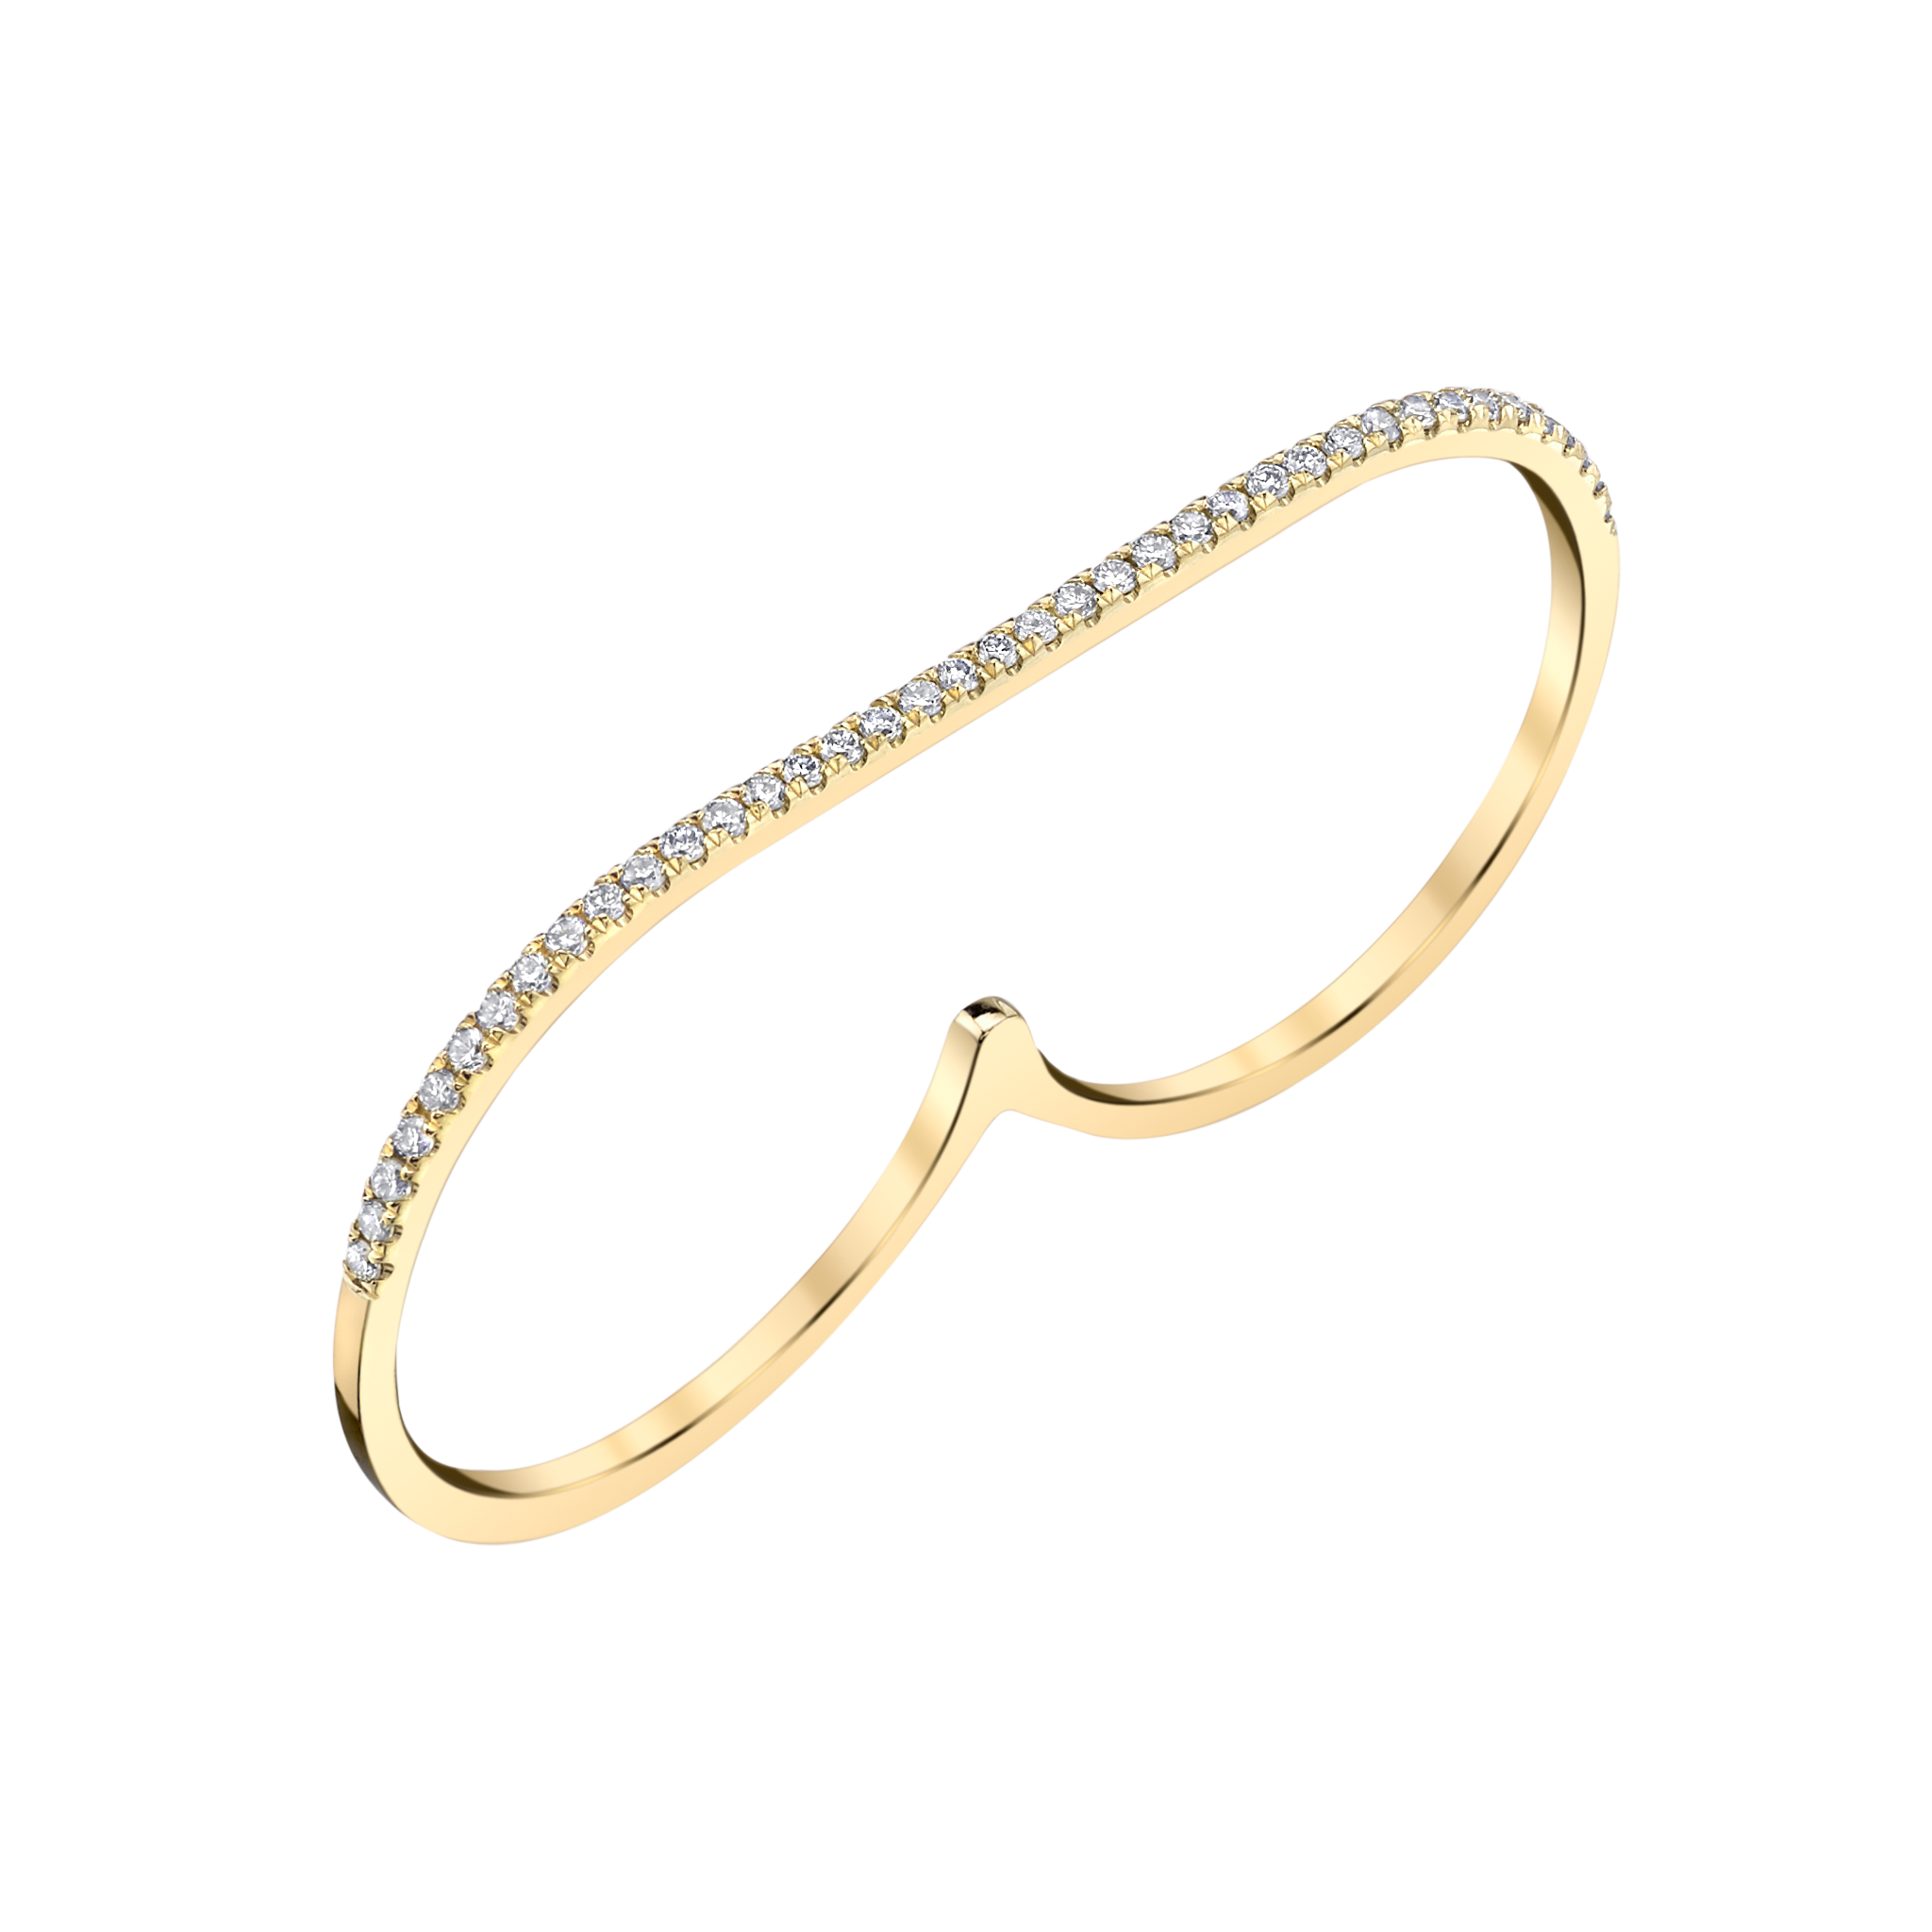 Infinite Staple Ring with White Pavé Diamonds - Gabriela Artigas